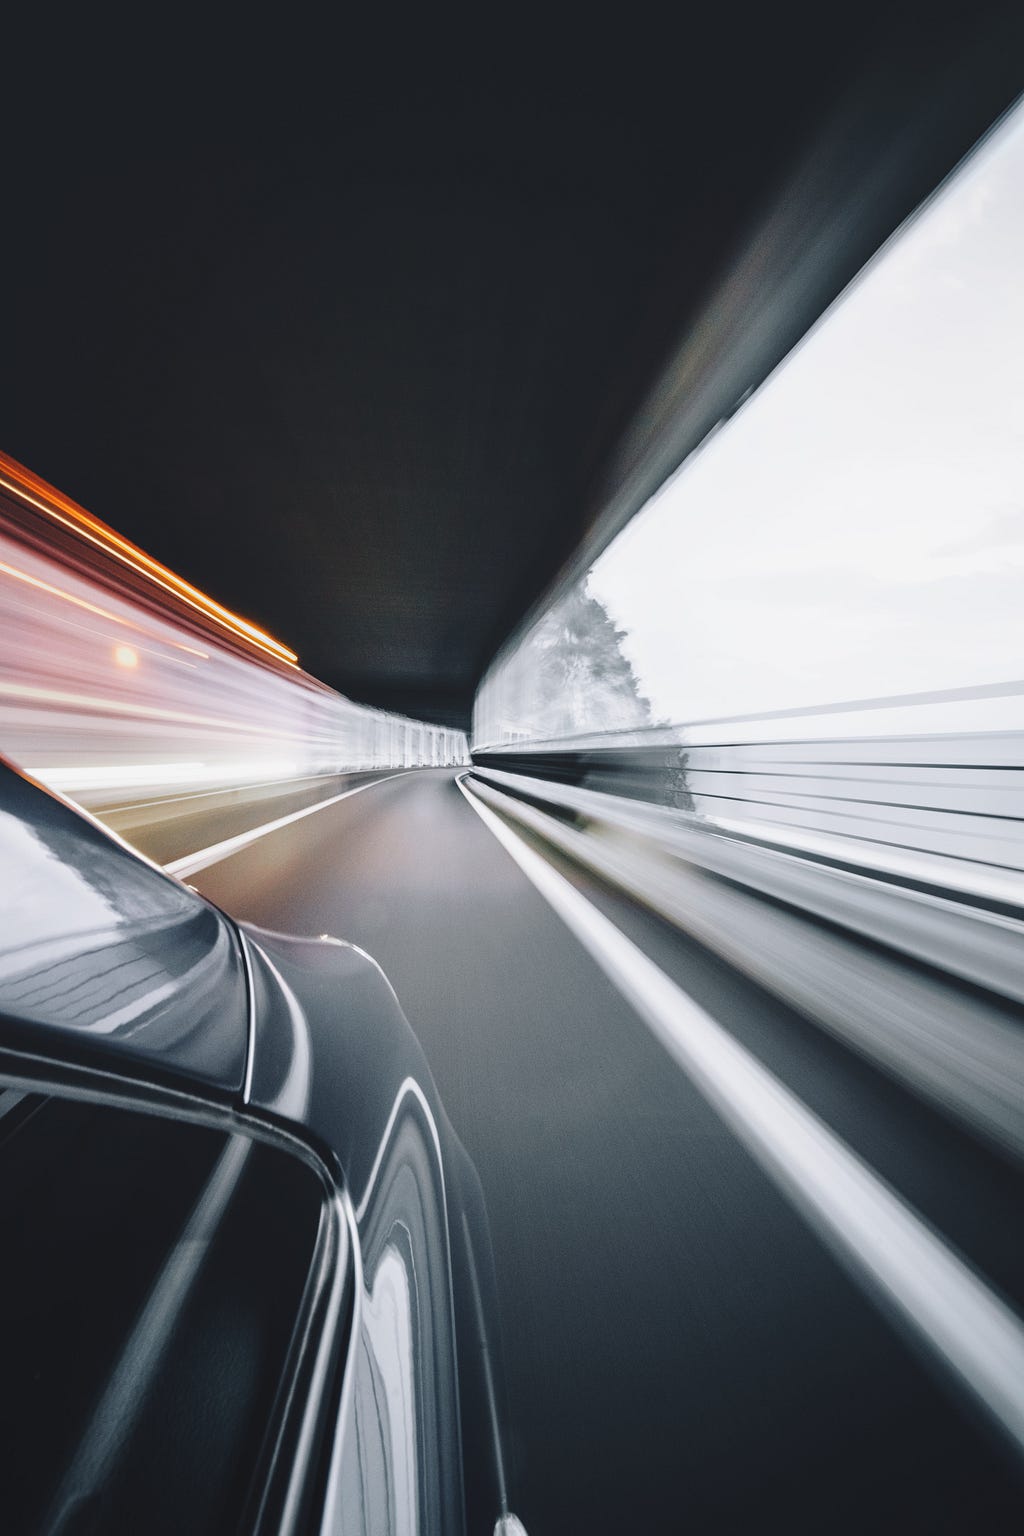 Speedy image of a car blazing through a tunnel.